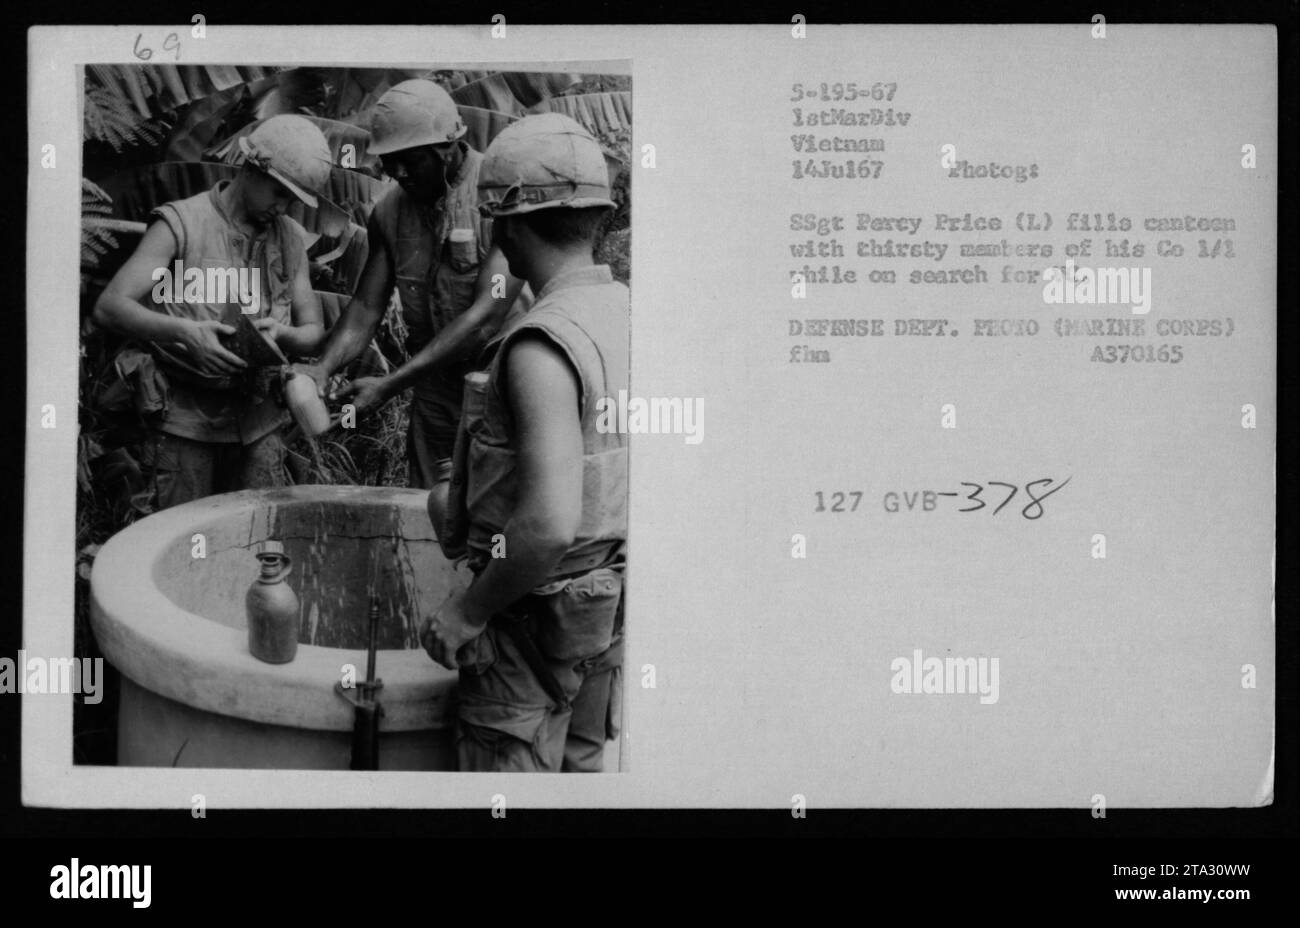 Mitglieder der 1/1 Company, Teil der 1. Marine Division, füllen ihre Kantinen am 14. Juli 1967 in Vietnam mit Wasser. Das Foto zeigt die Wasseraufbereitungsanlagen und die Feldwiedereinspeisungen, die vom Militär durchgeführt wurden. Es wurde von SSgt Percy Price während einer Suche nach Vietnam Cong genommen. Stockfoto